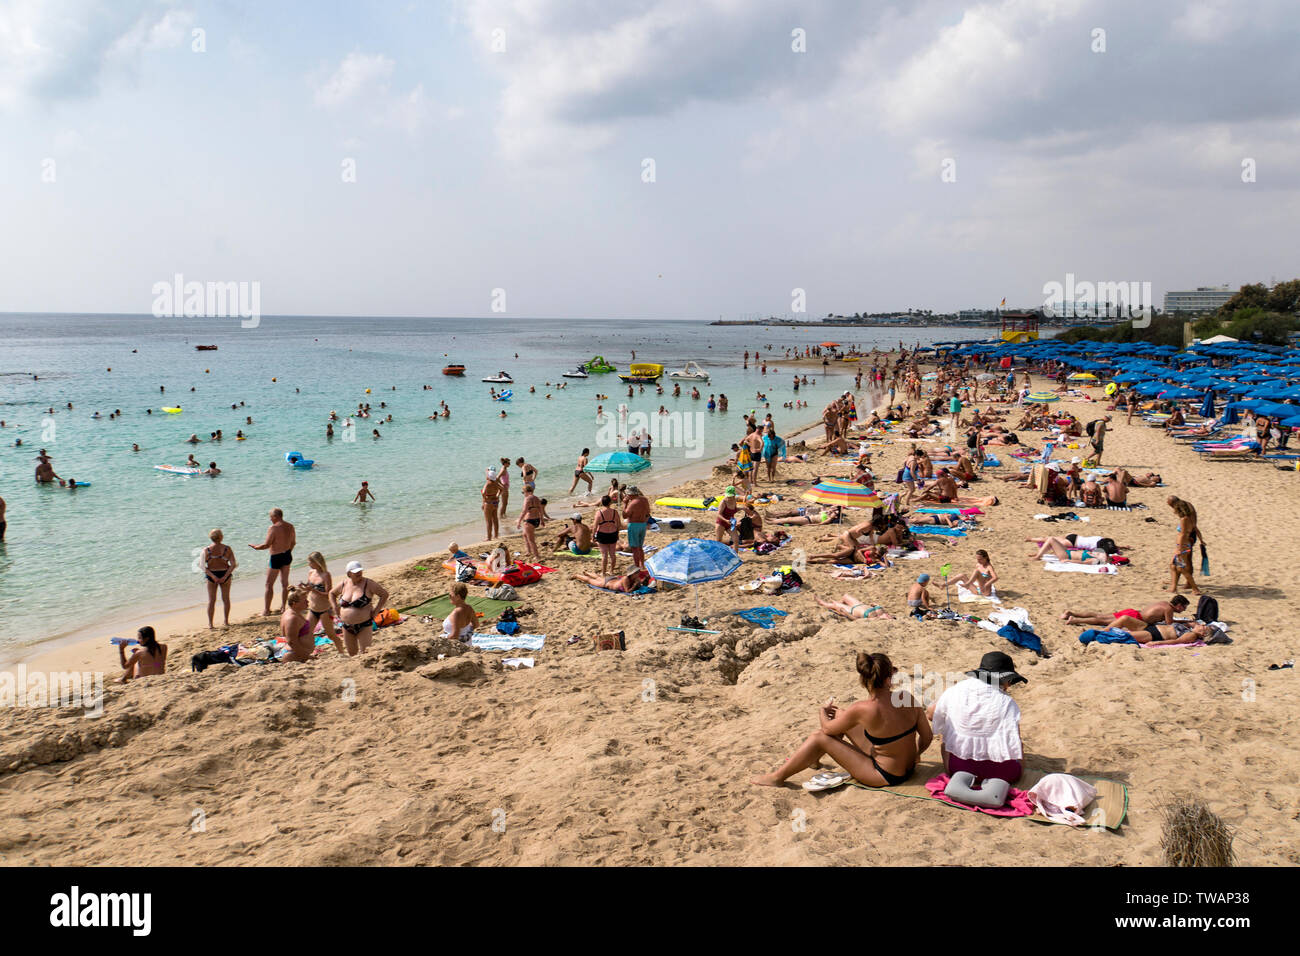 Strand mit Touristen am Strand zu entspannen, schwimmen und spielen an einem heißen Sommertag. Oktober 20, 2019. Aya Napa Zypern. Stockfoto